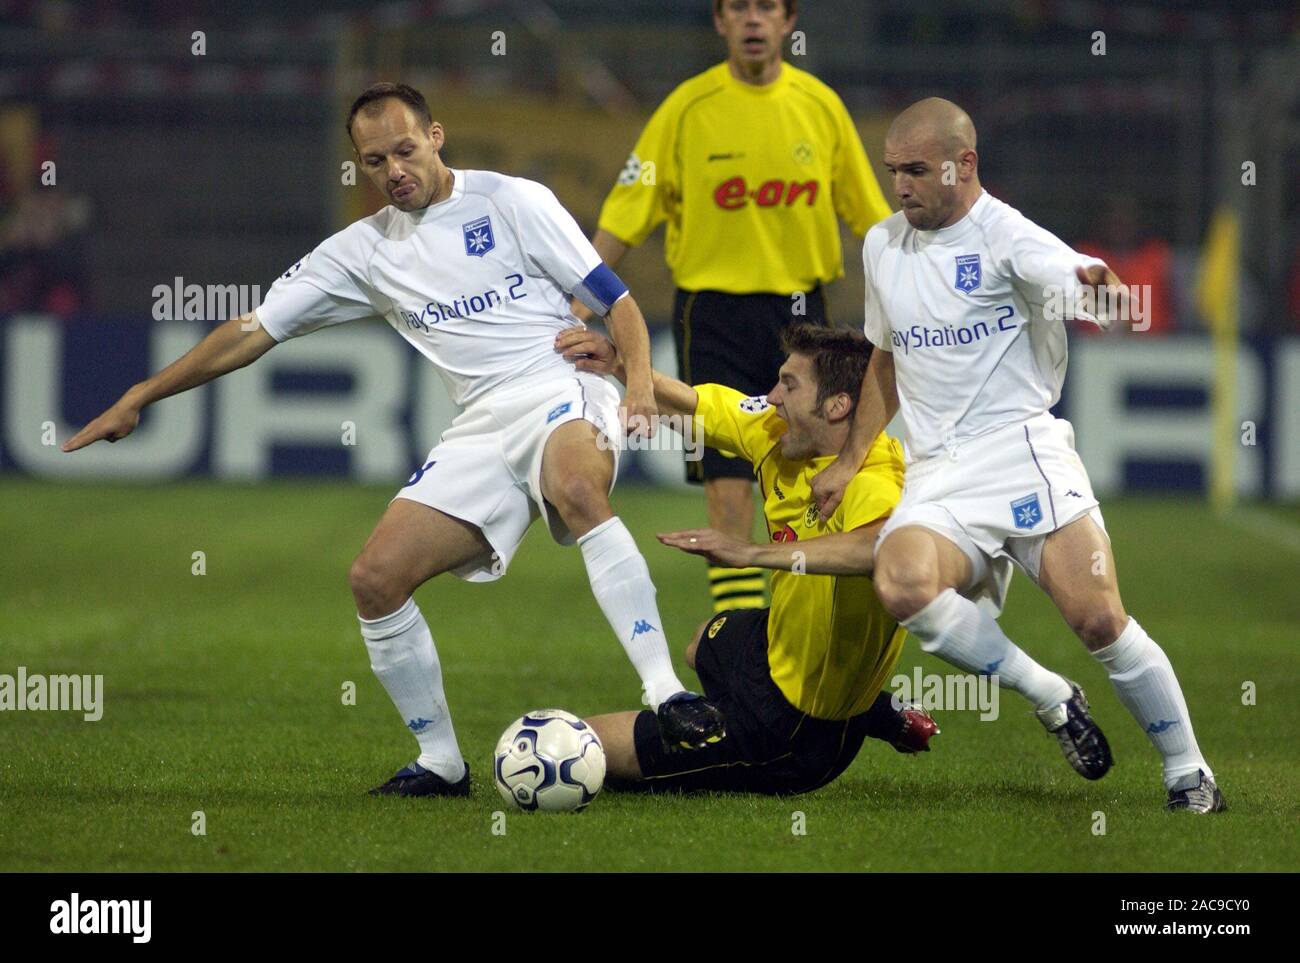 Westfalestadion Dortmund Allemagne 25.9.2002, Football : Ligue des  Champions 2002-2003, saison (Borussia Dortmund BVB, jaune) contre l'AJ  Auxerre (AUX, blanc) 2:1 ; à partir de la gauche : Teemu TAINIO SE BLESSA (